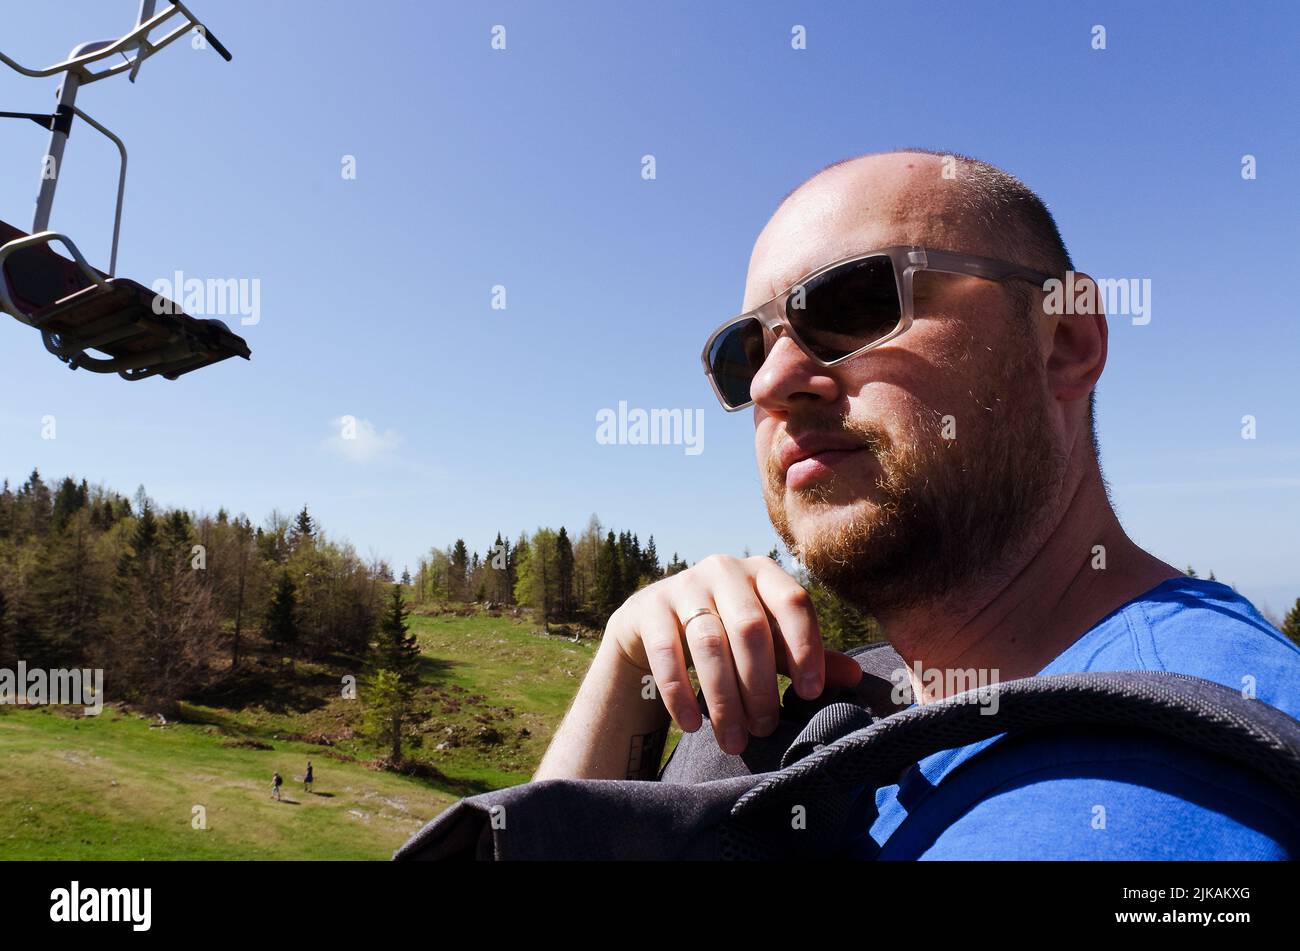 Der Mensch genießt den Blick auf das alpine Dorf in den Bergen. Velika Planina oder großes Weideplateau in den Kamnik Alpen, Slowenien. Stockfoto